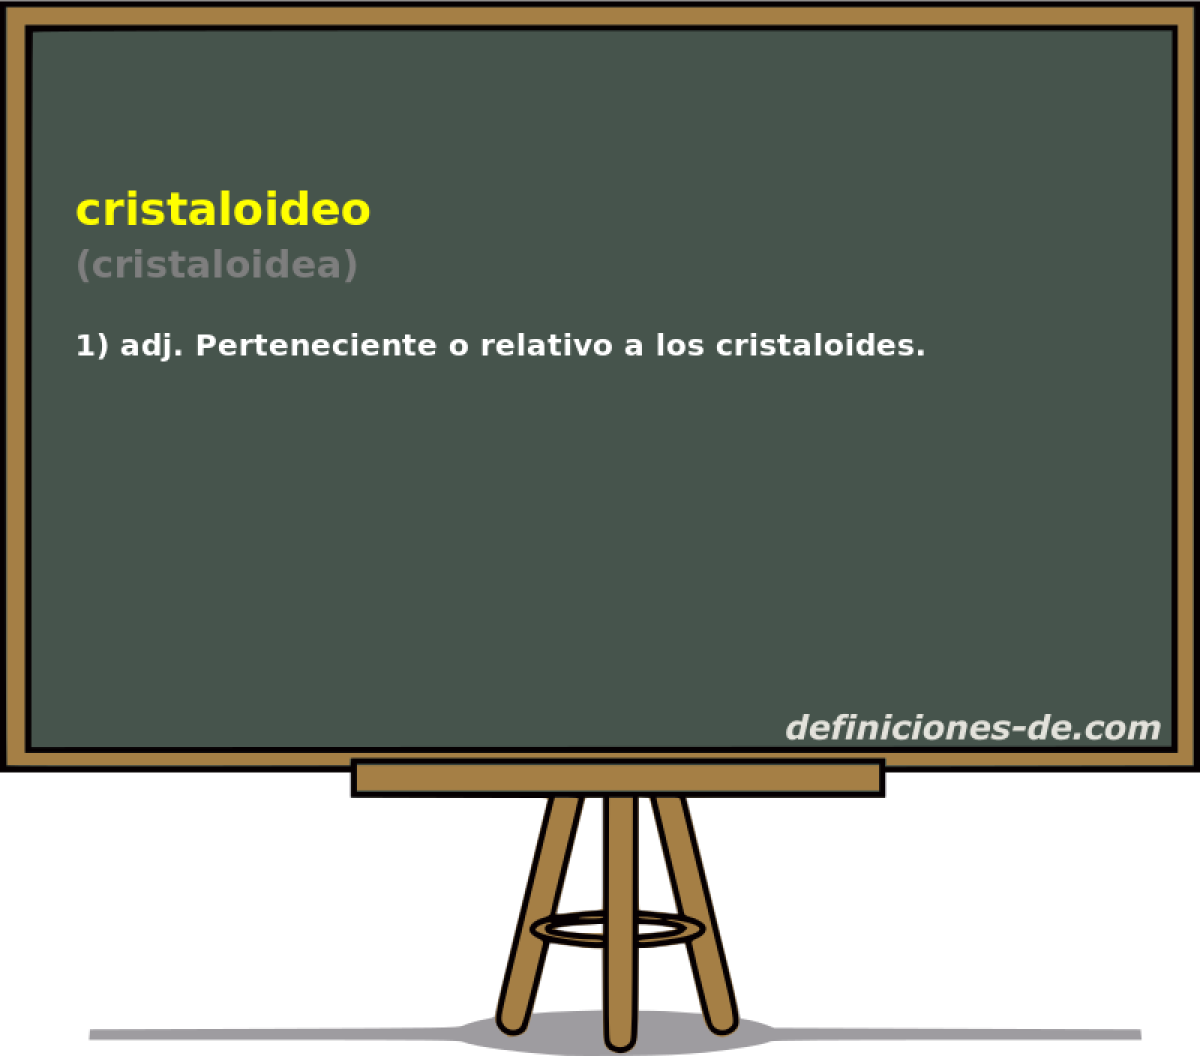 cristaloideo (cristaloidea)